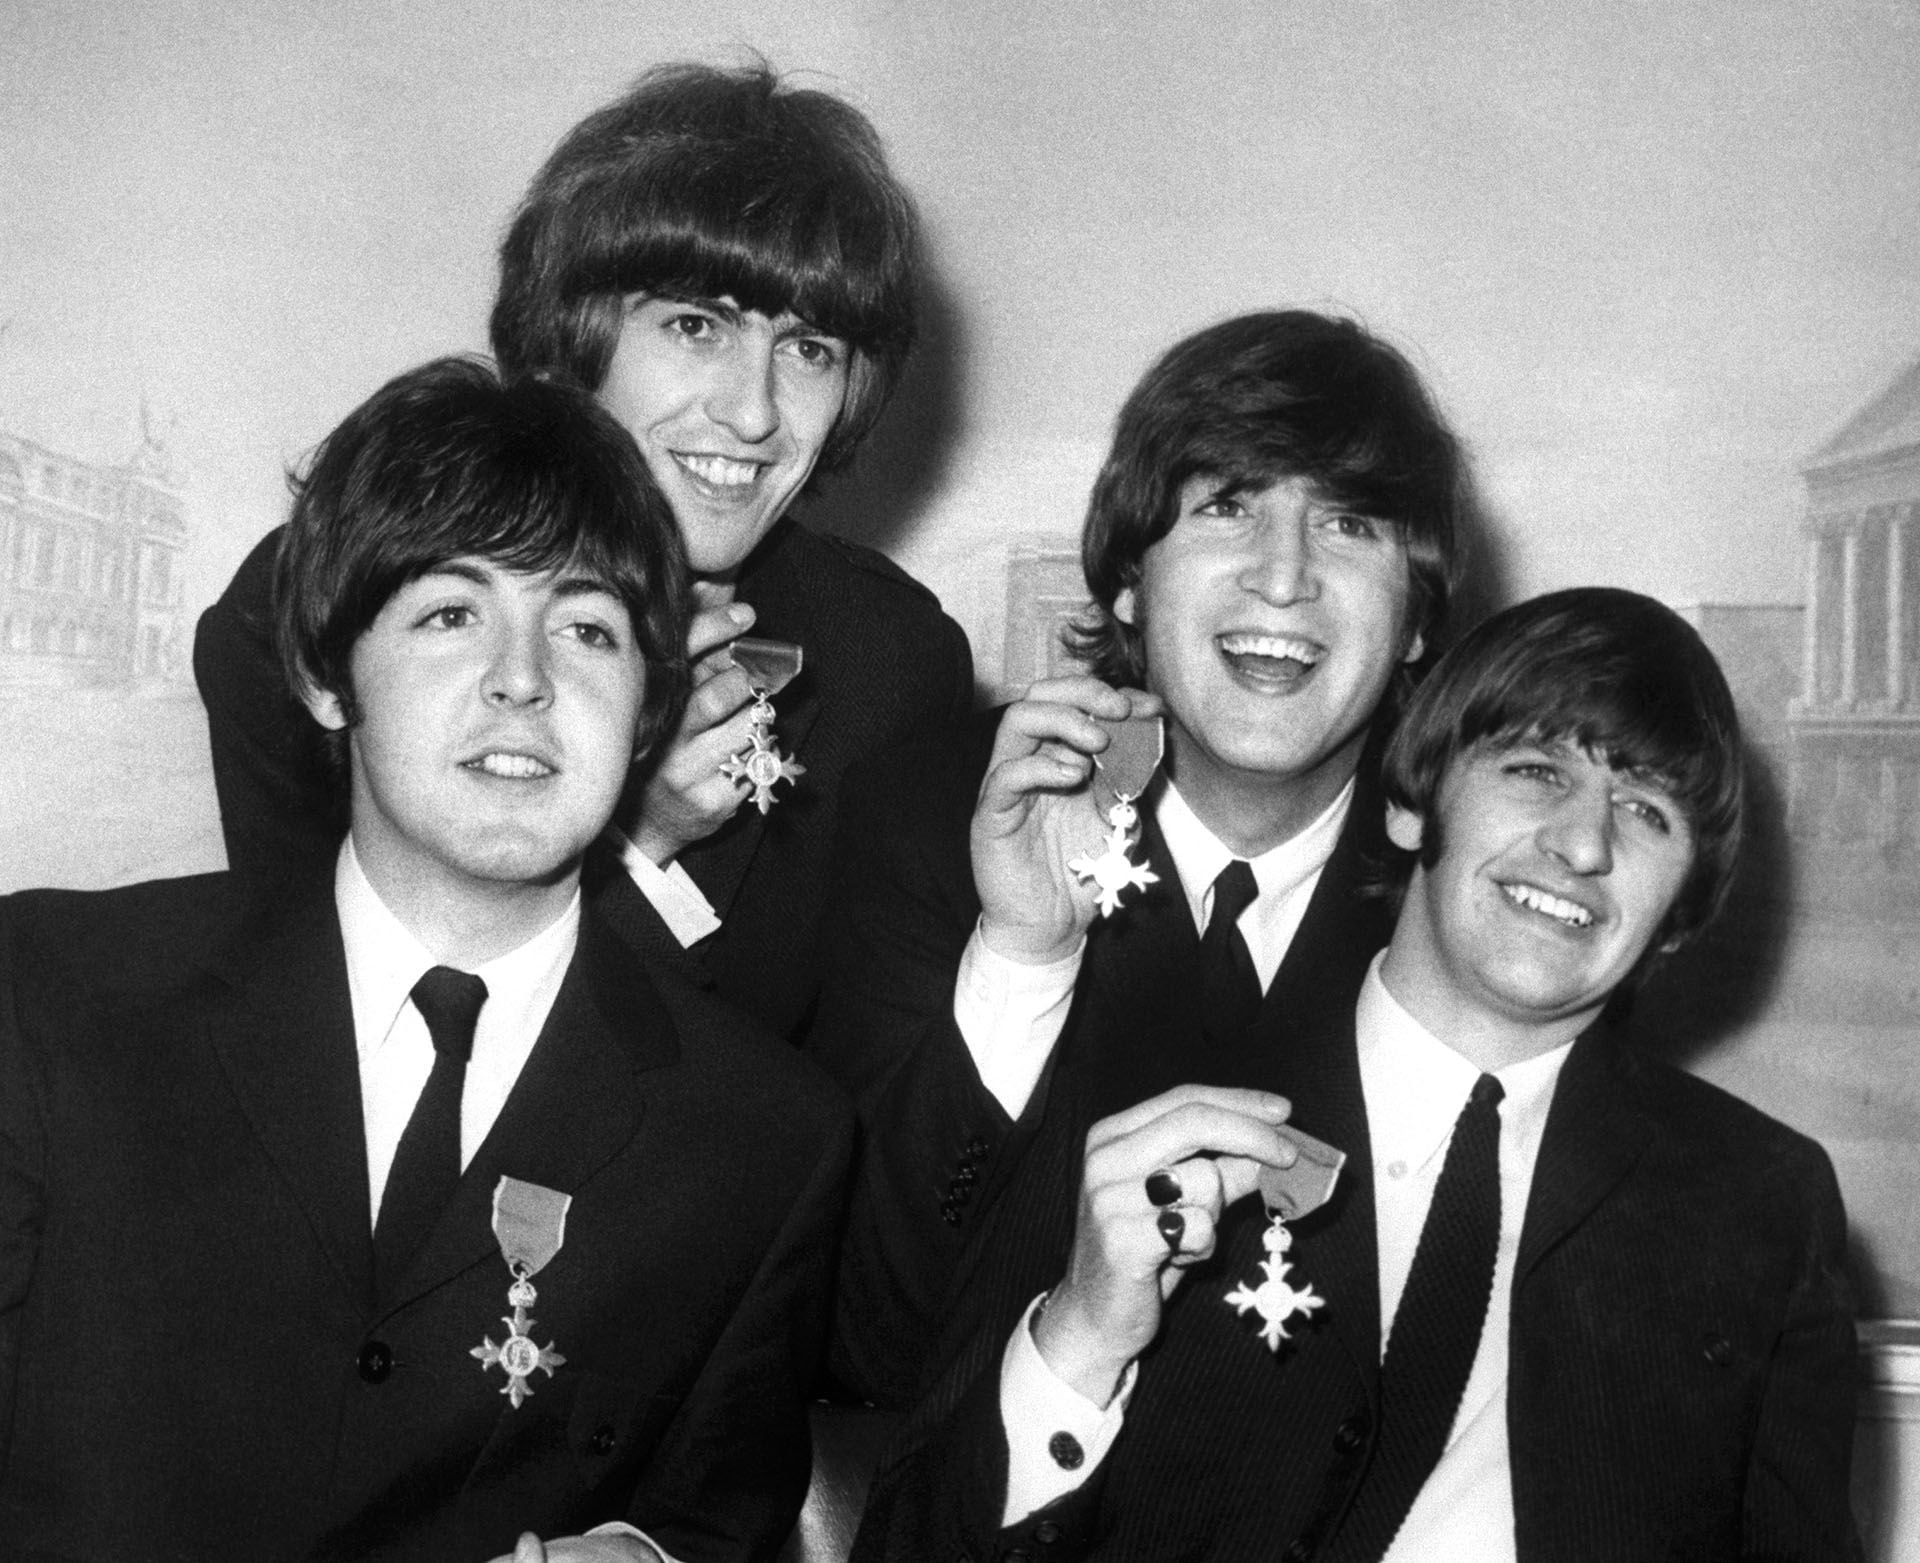 Los Beatles muestran las medallas que recibieron cuando la Reina Isabel les concedió la membresía de la Orden del Imperio Británico en el Palacio de Buckingham. De izquierda a derecha: Paul McCartney, George Harrison, John Lennon y Ringo Starr.